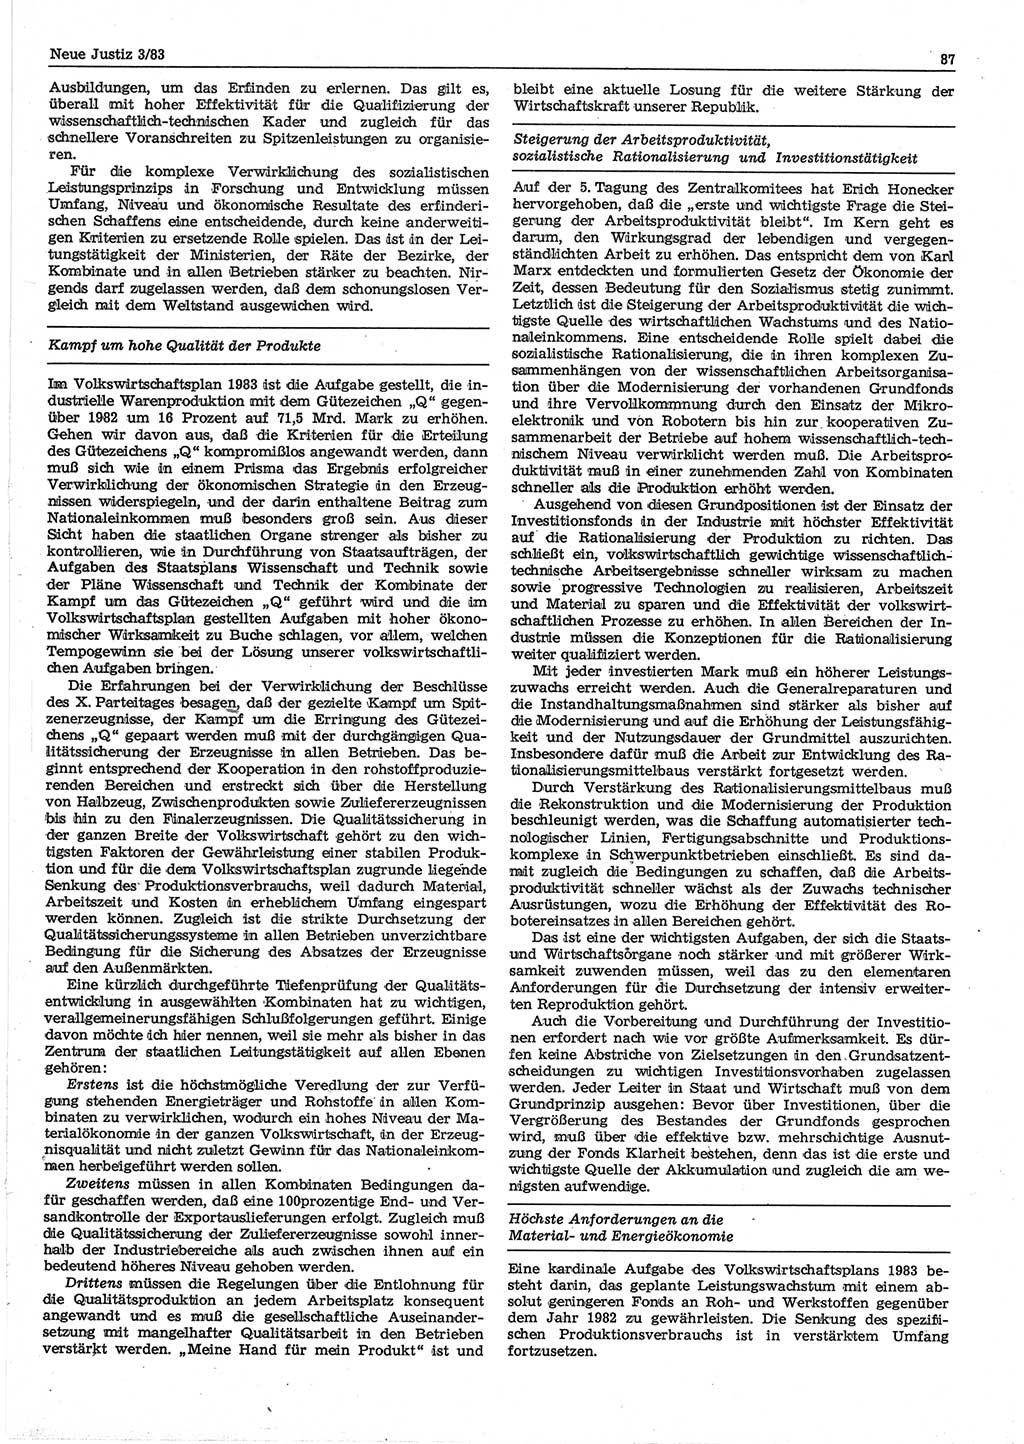 Neue Justiz (NJ), Zeitschrift für sozialistisches Recht und Gesetzlichkeit [Deutsche Demokratische Republik (DDR)], 37. Jahrgang 1983, Seite 87 (NJ DDR 1983, S. 87)